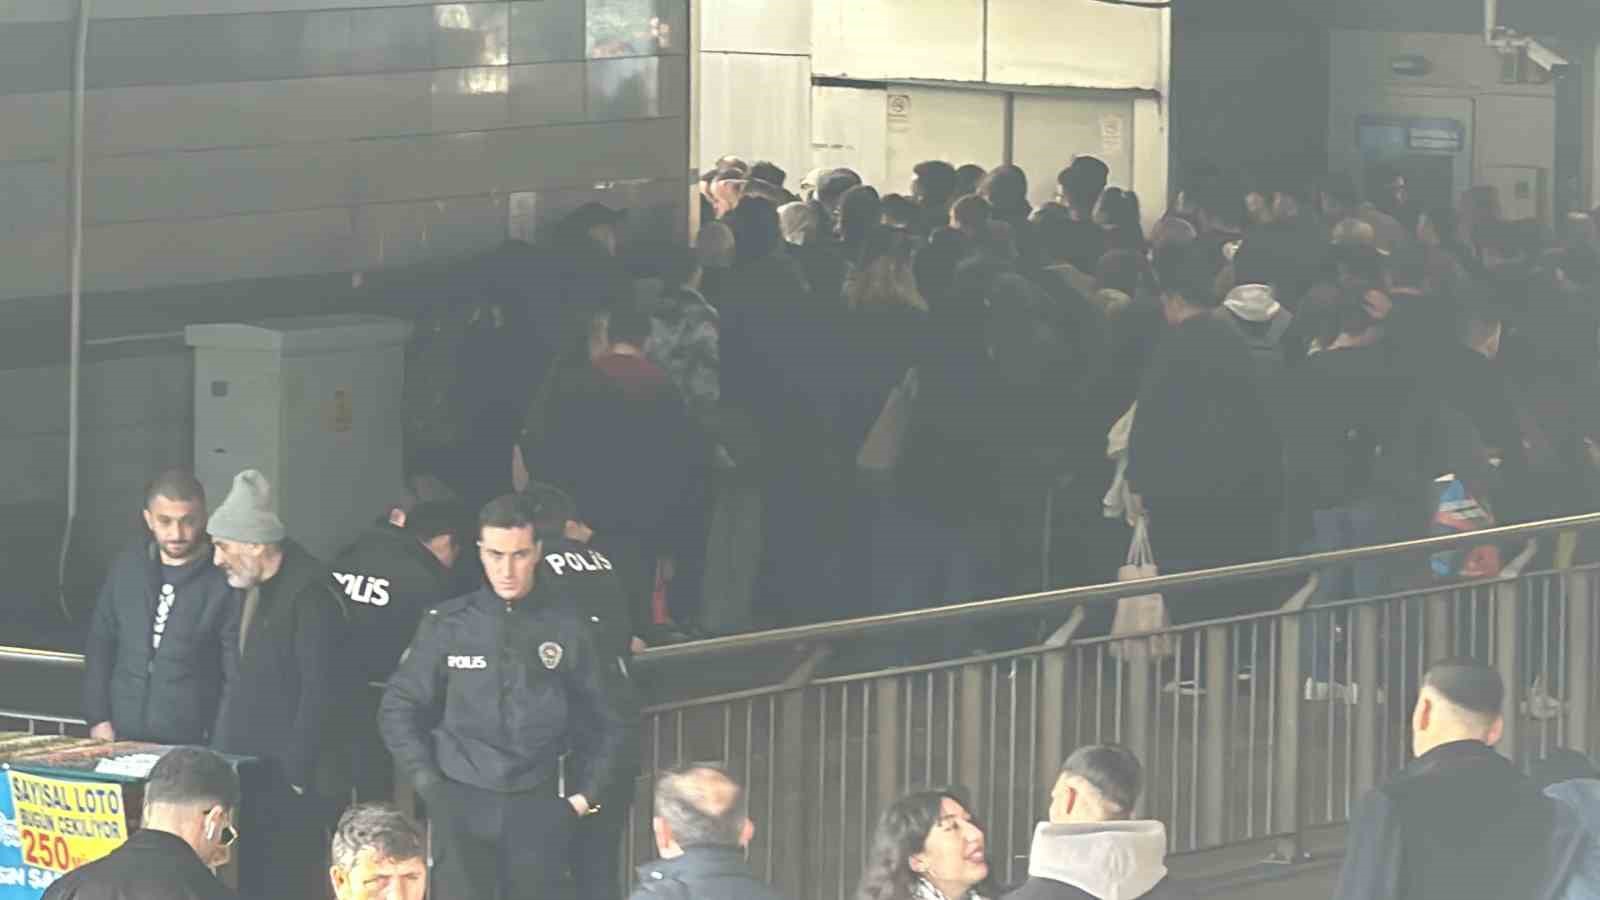 Mecidiköy metrobüs durağındaki yürüyen merdiven aniden durdu: 3 yaralı
